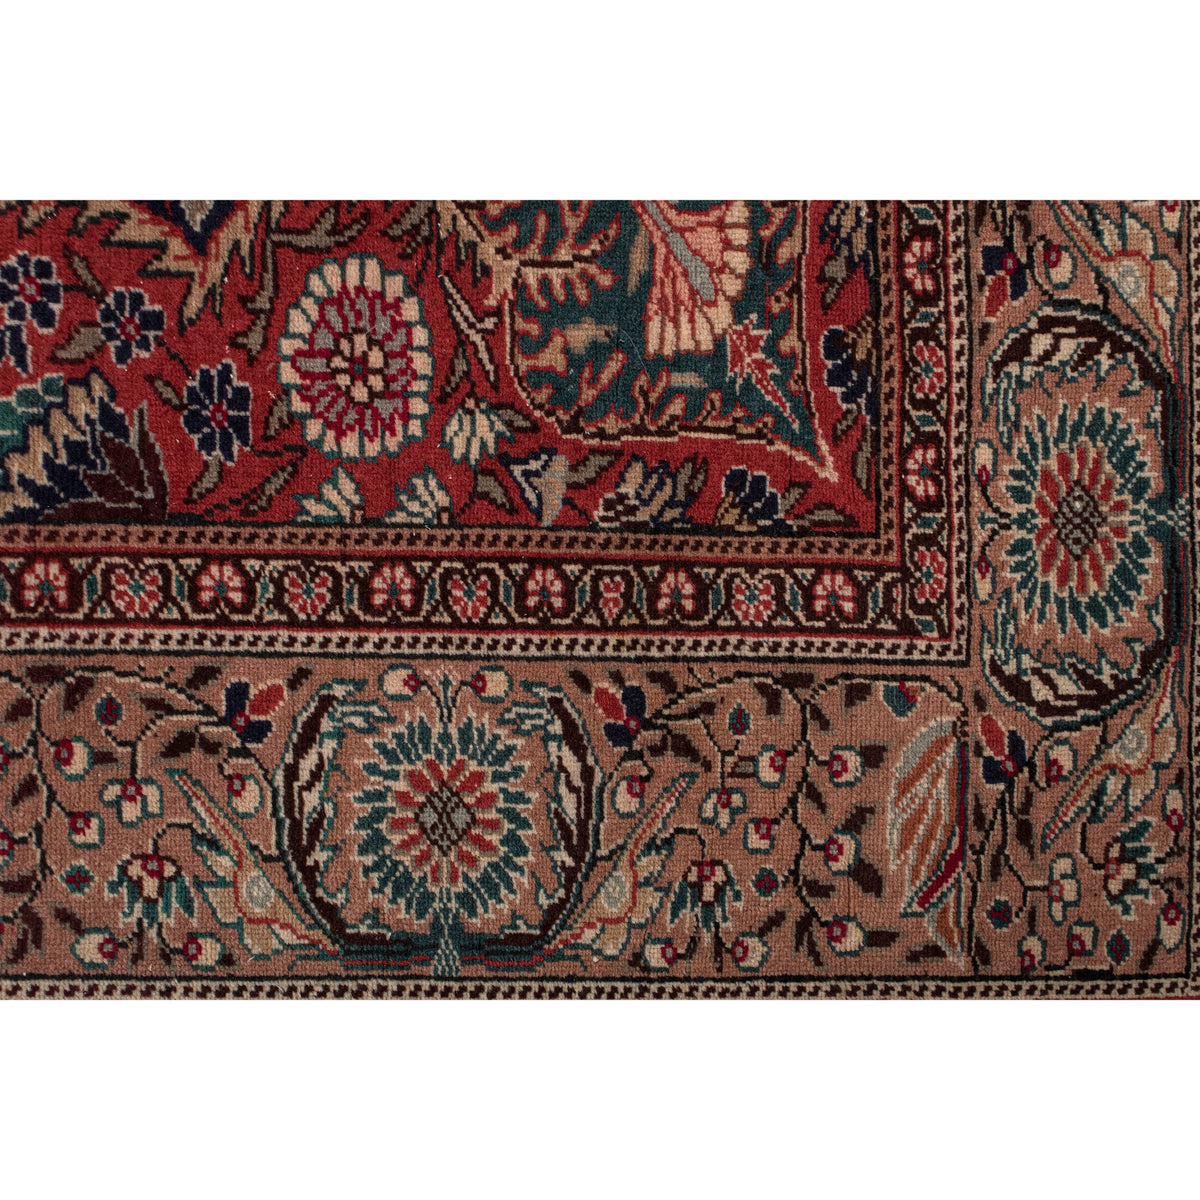 Golviran - (6'4" x 9'2") Vintage Turkish Rug